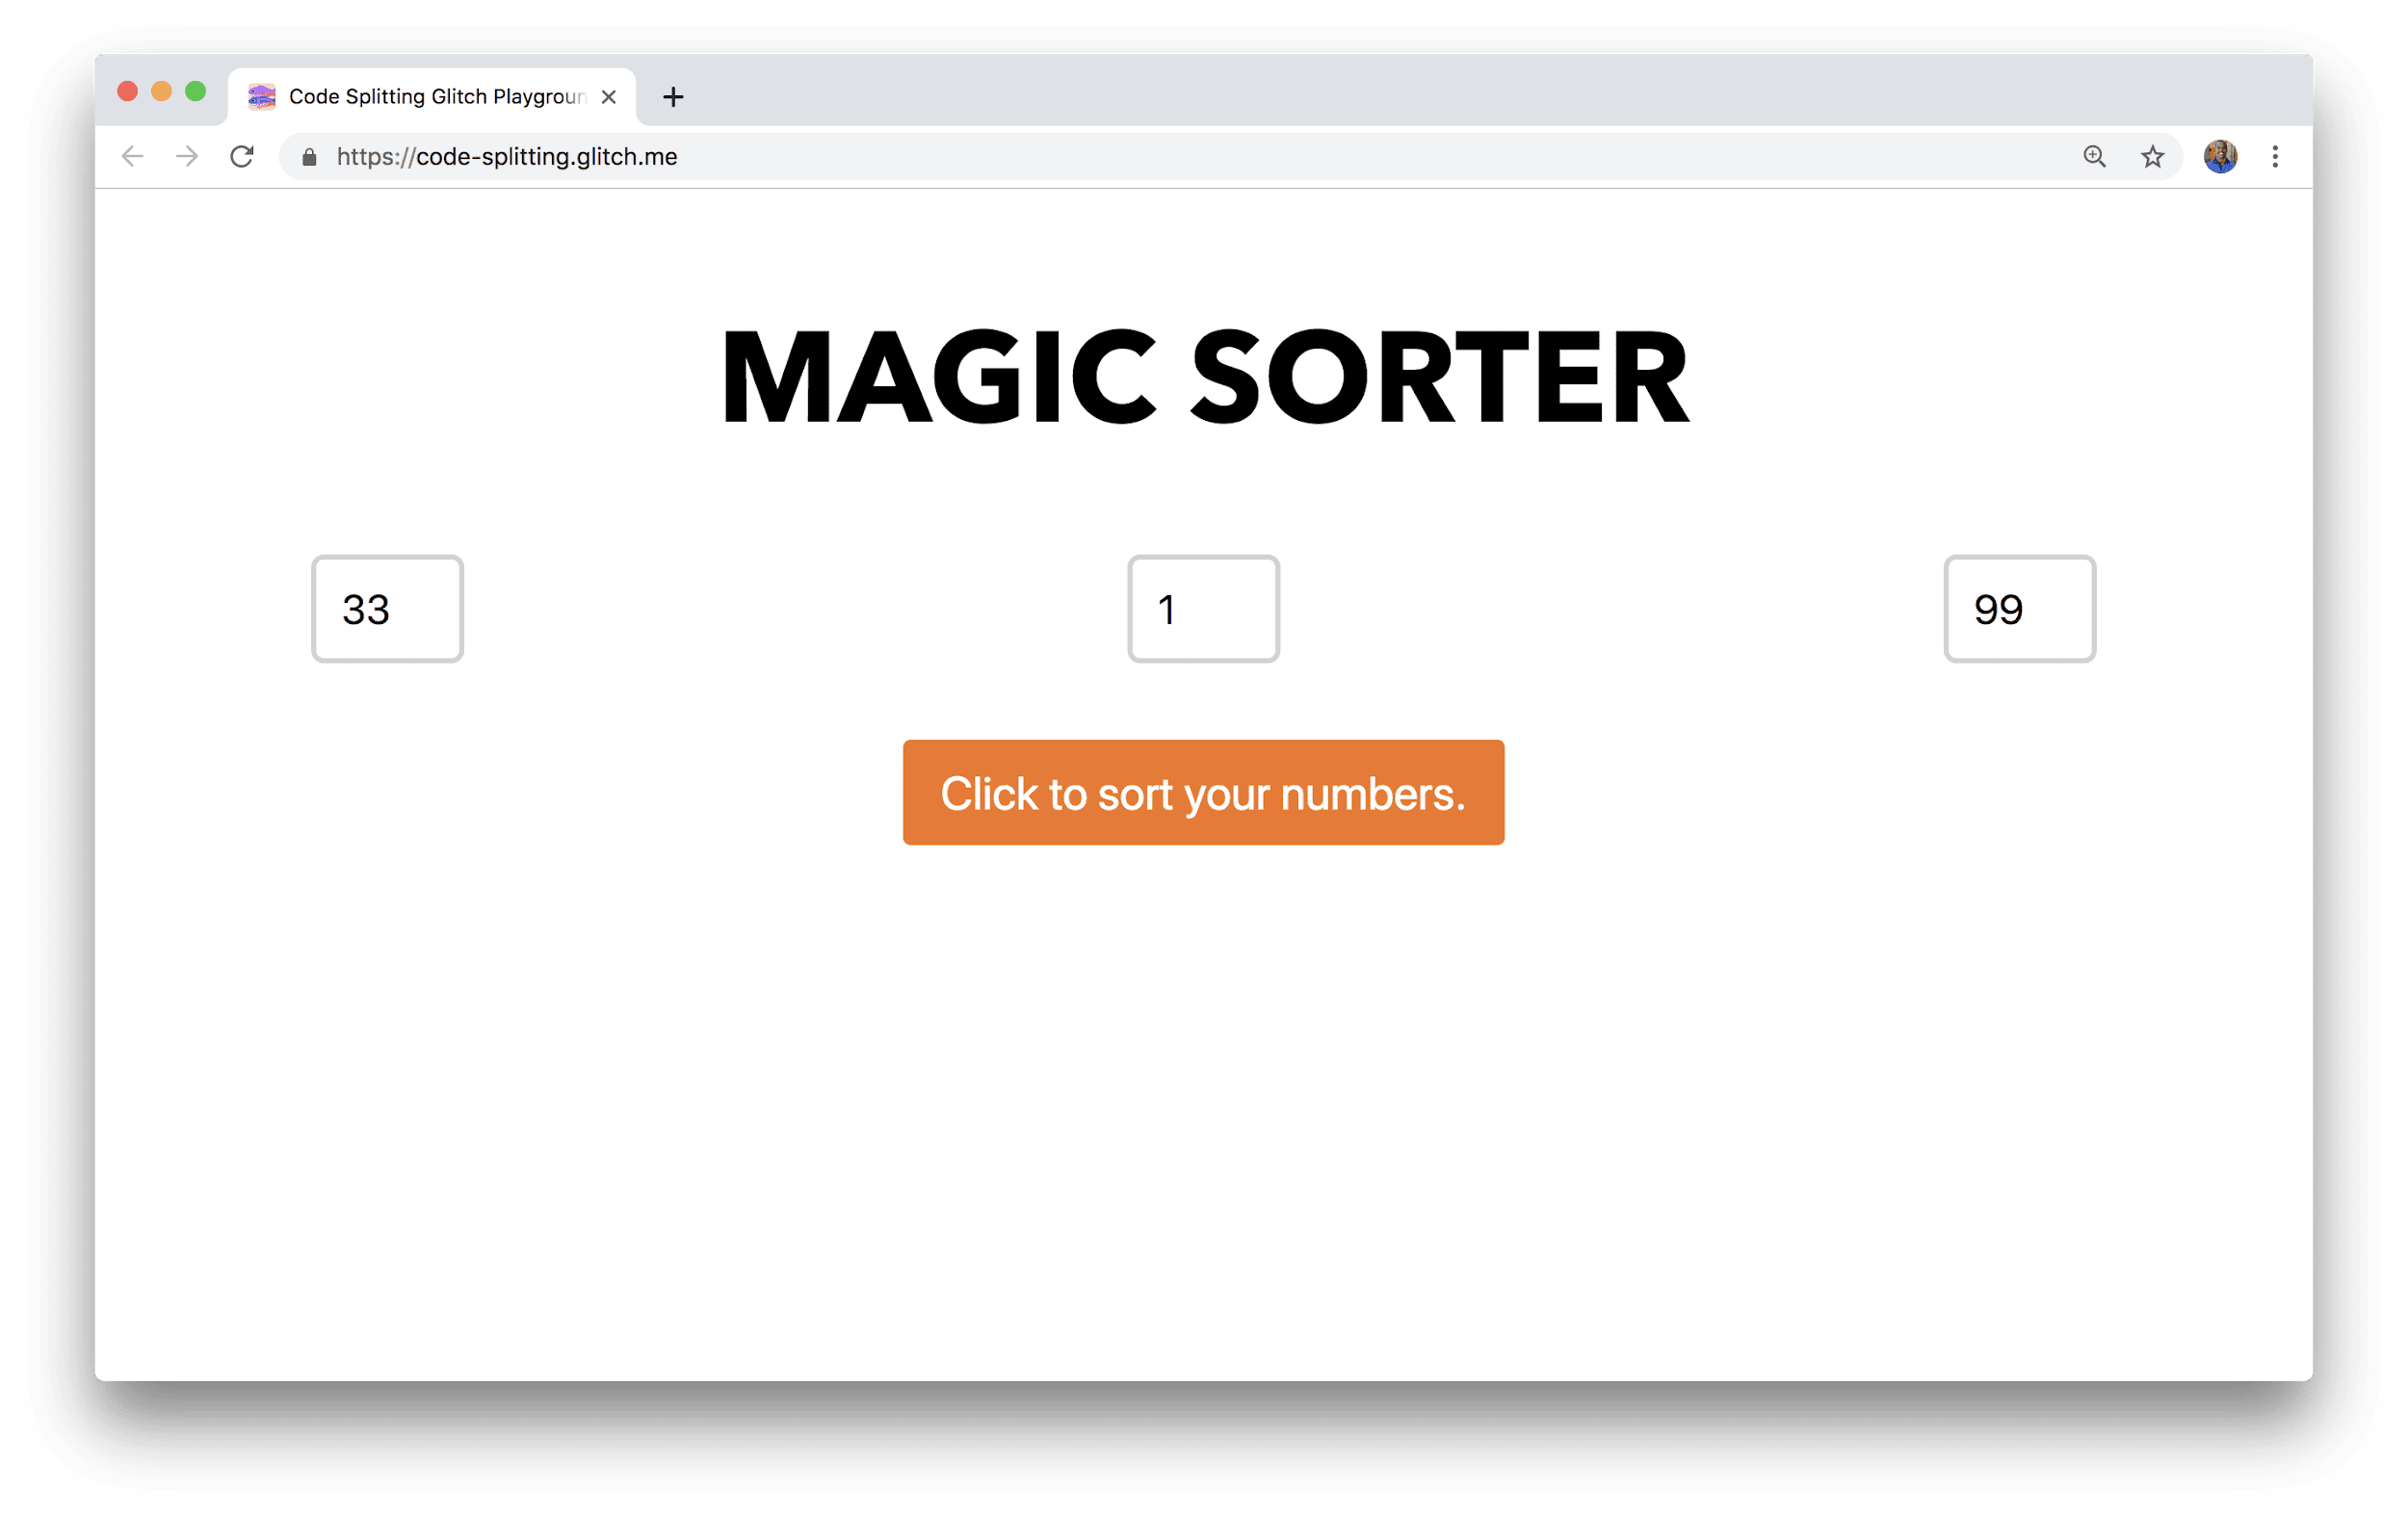 一个浏览器窗口，显示了一款名为“Magic Sorter”的应用，该应用包含三个用于输入数字的字段和一个排序按钮。